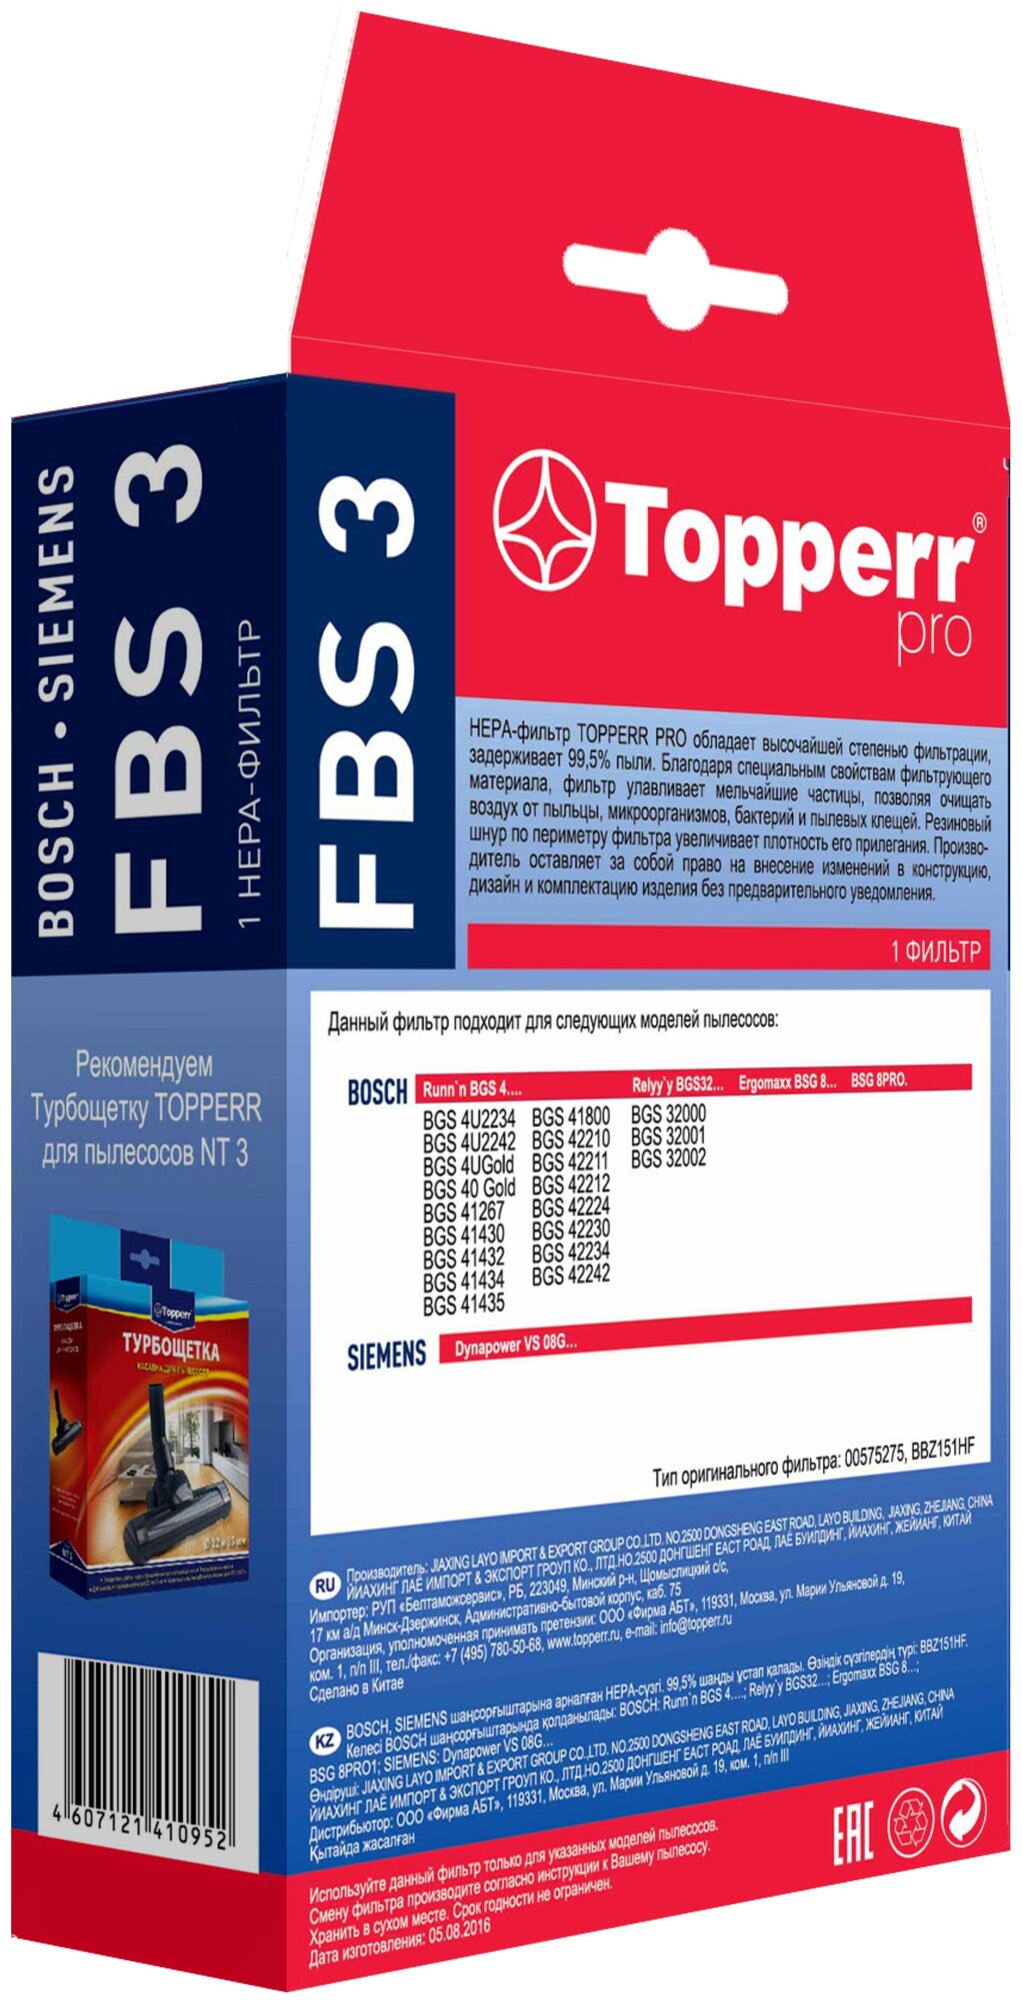 HEPA фильтр для пылесоса Topperr - фото №4